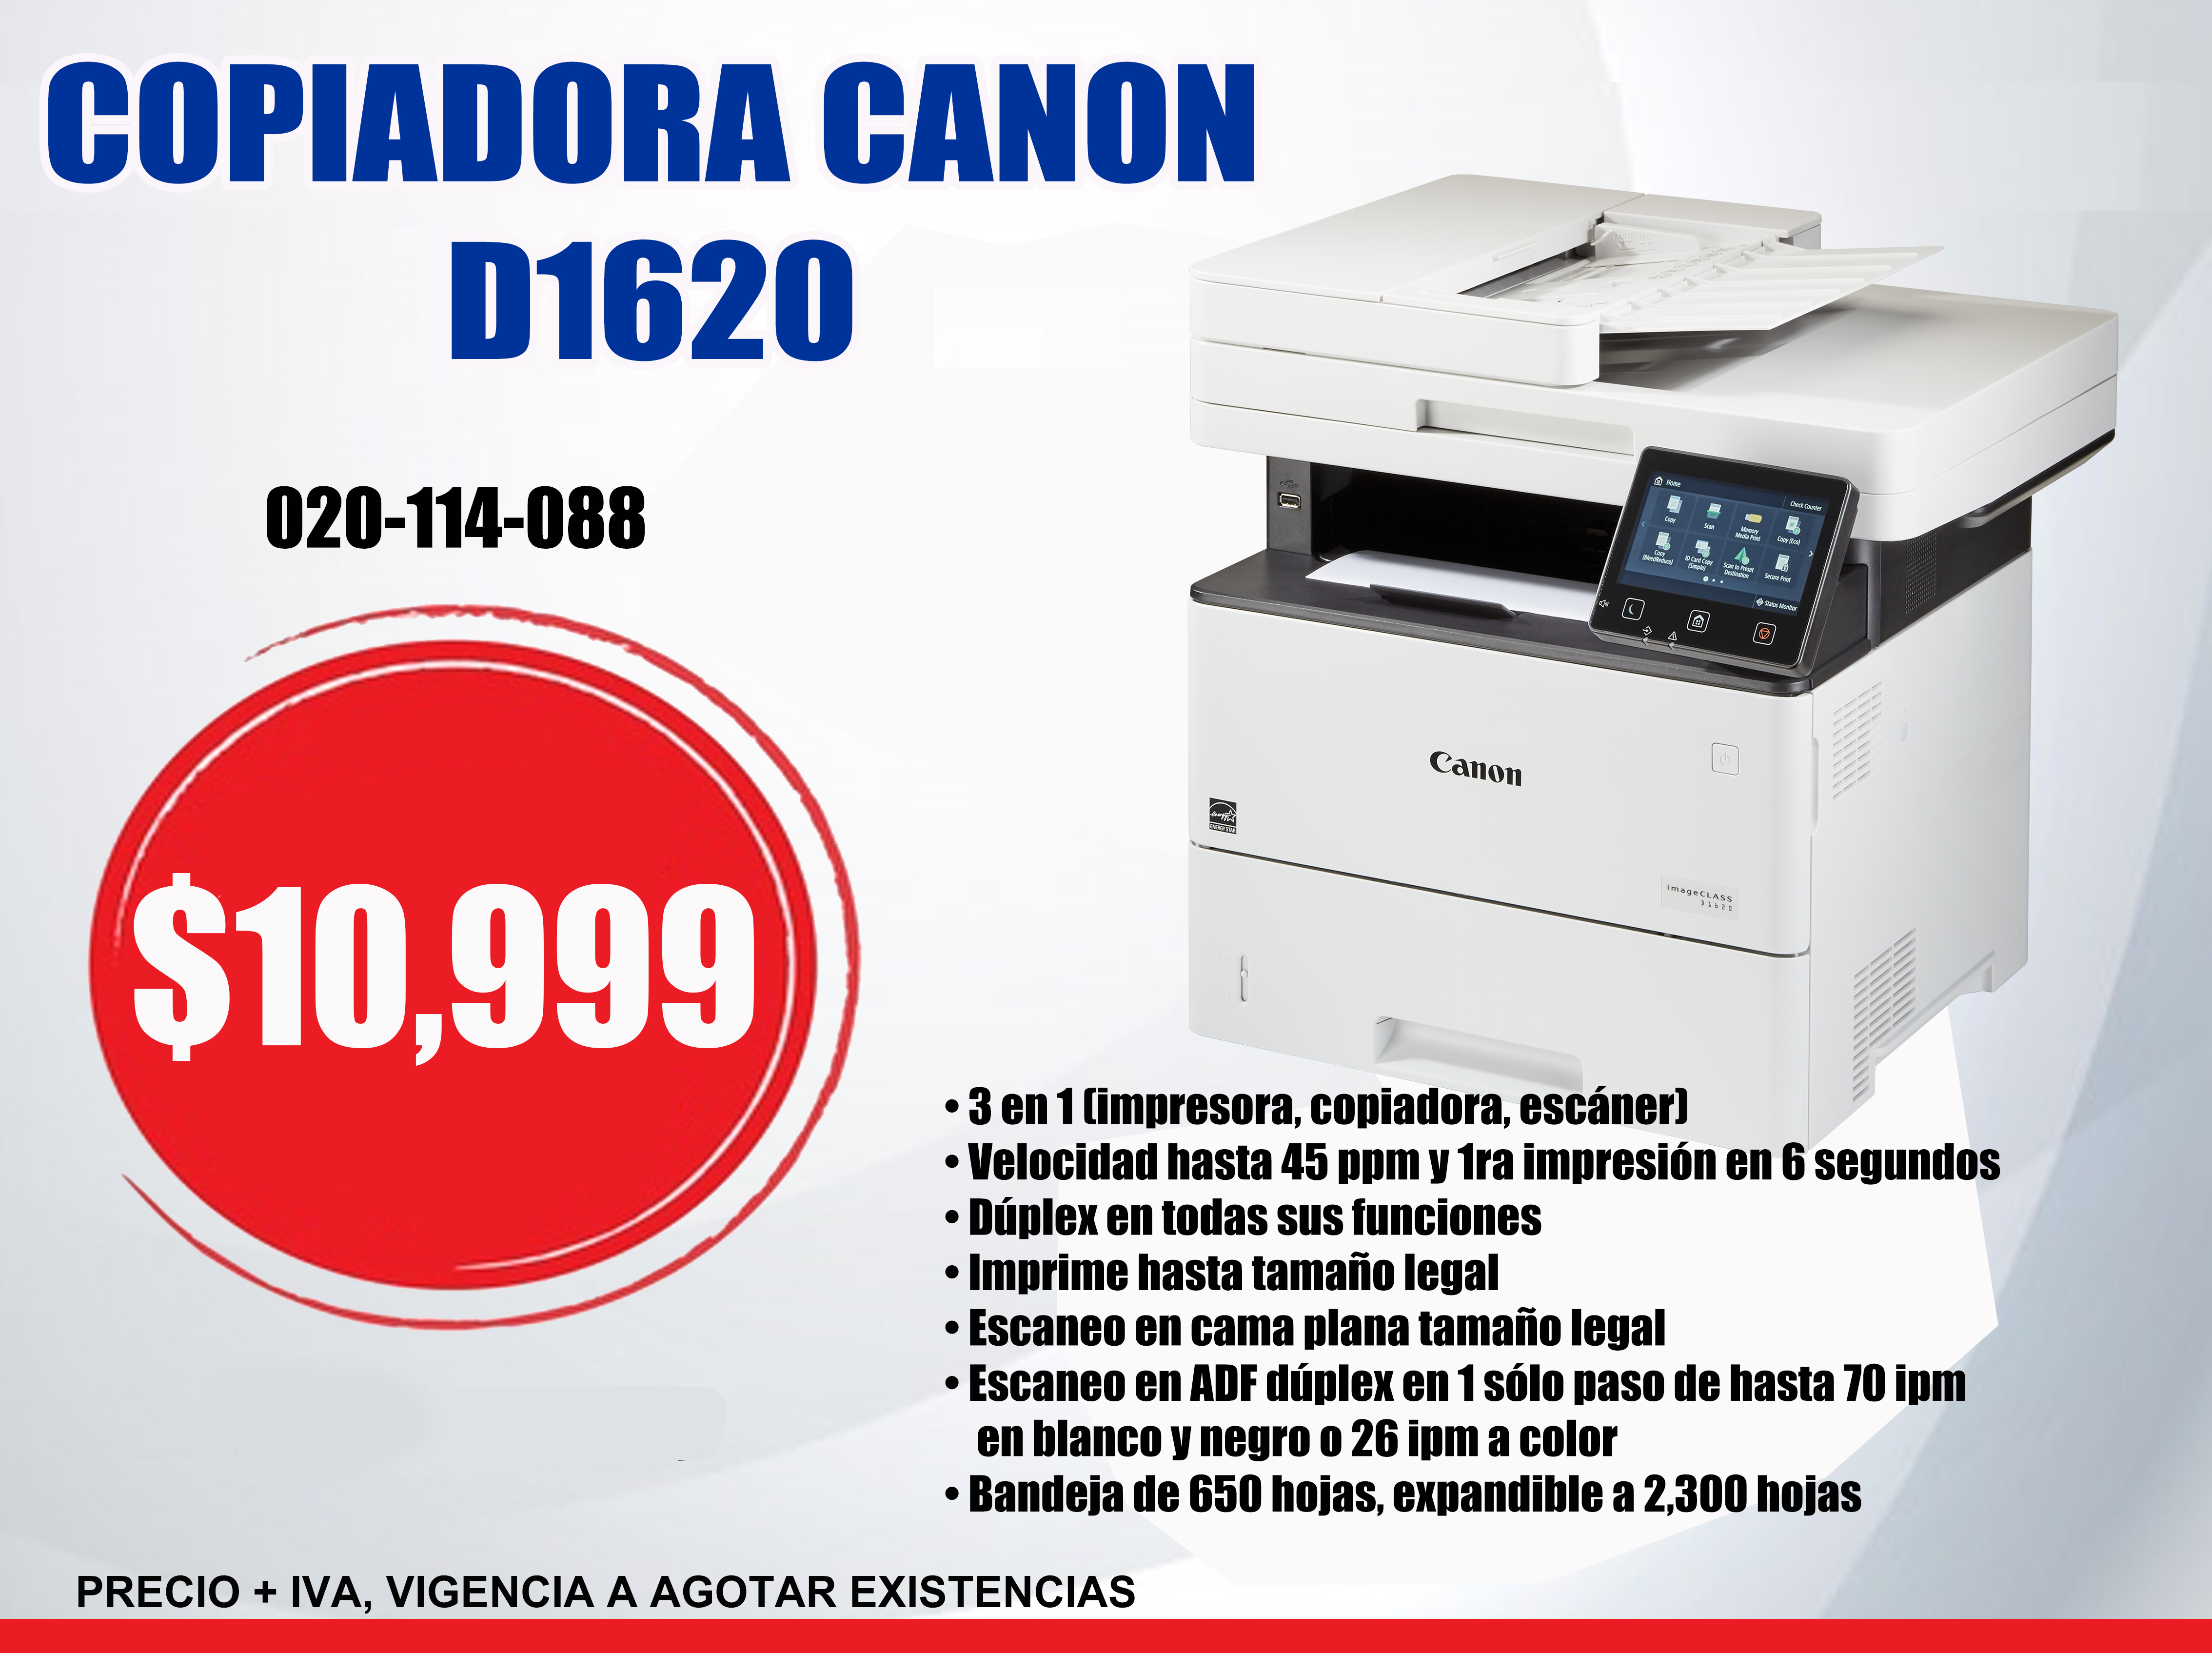 COPIADORA CANON D1620